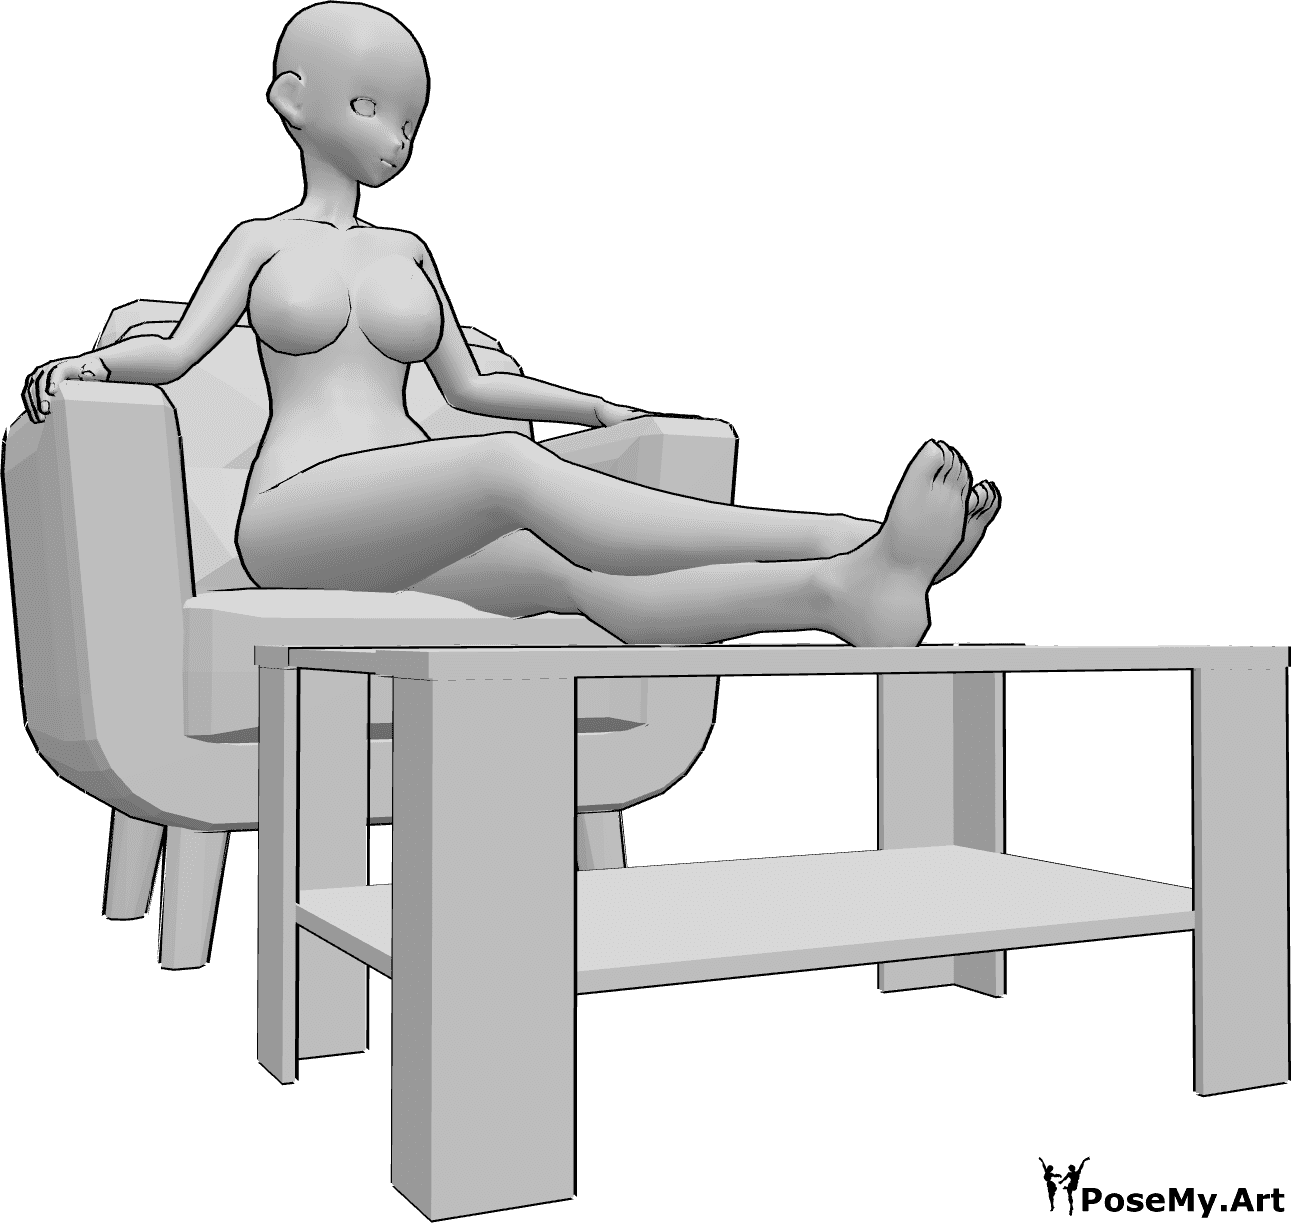 Referencia de poses- Postura anime de piernas en reposo - La mujer anime está sentada en el sillón y apoya las piernas en una mesita